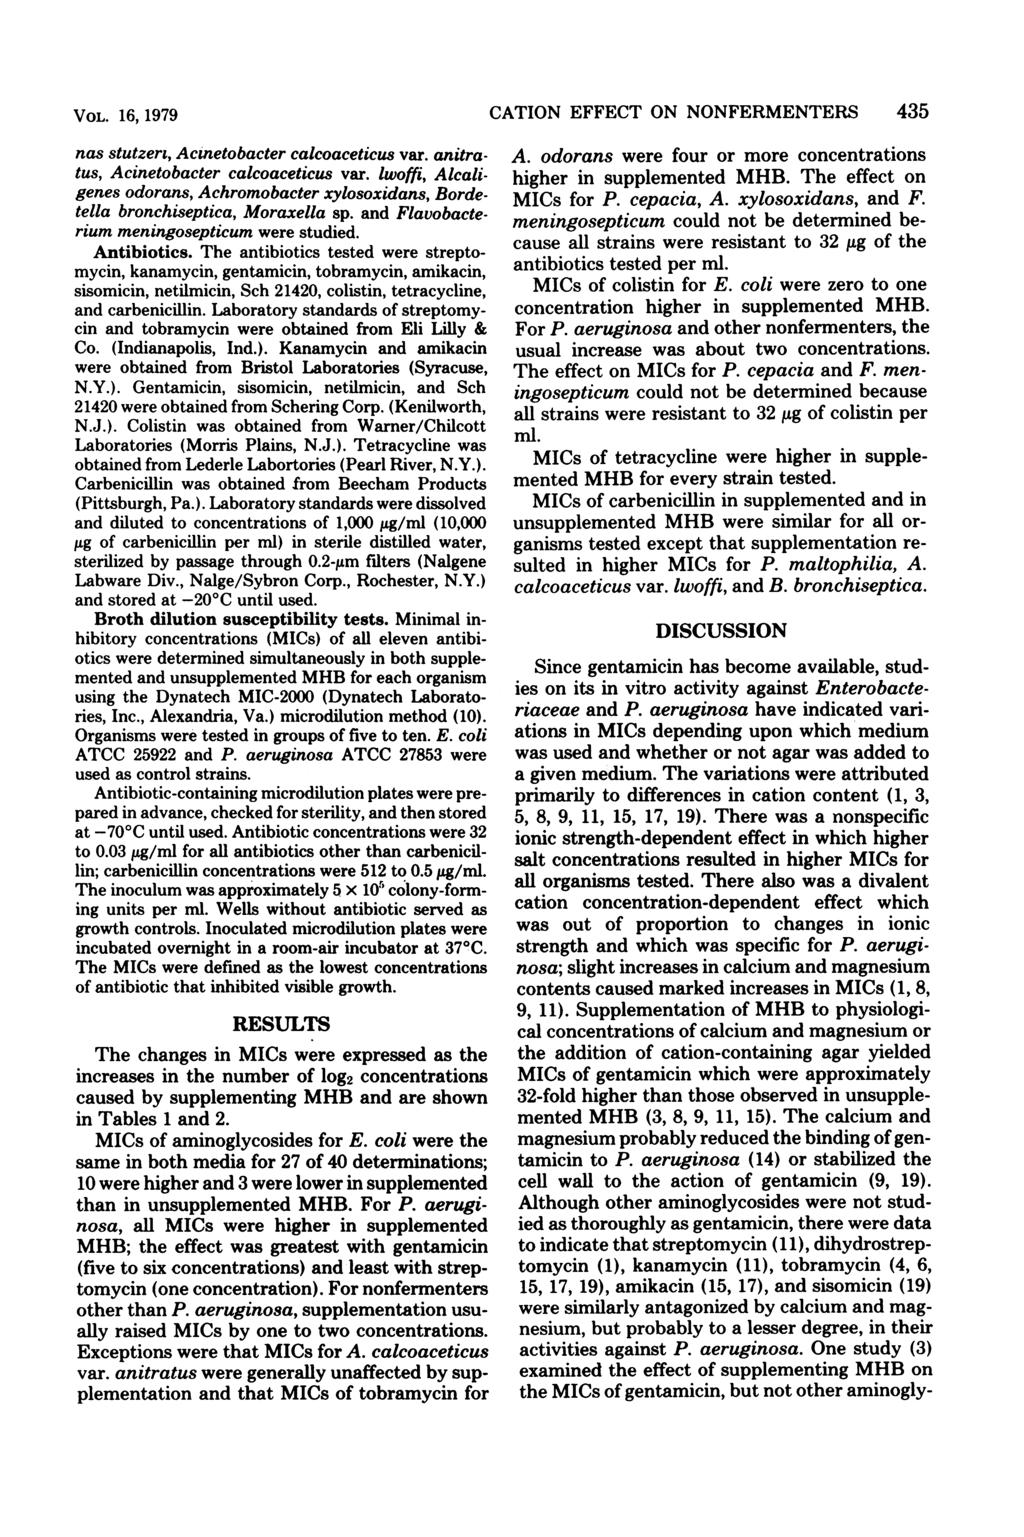 VOL. 16, 1979 nas stutzert, Acinetobacter calcoaceticus var. anitratus, Acinetobacter calcoaceticus var.